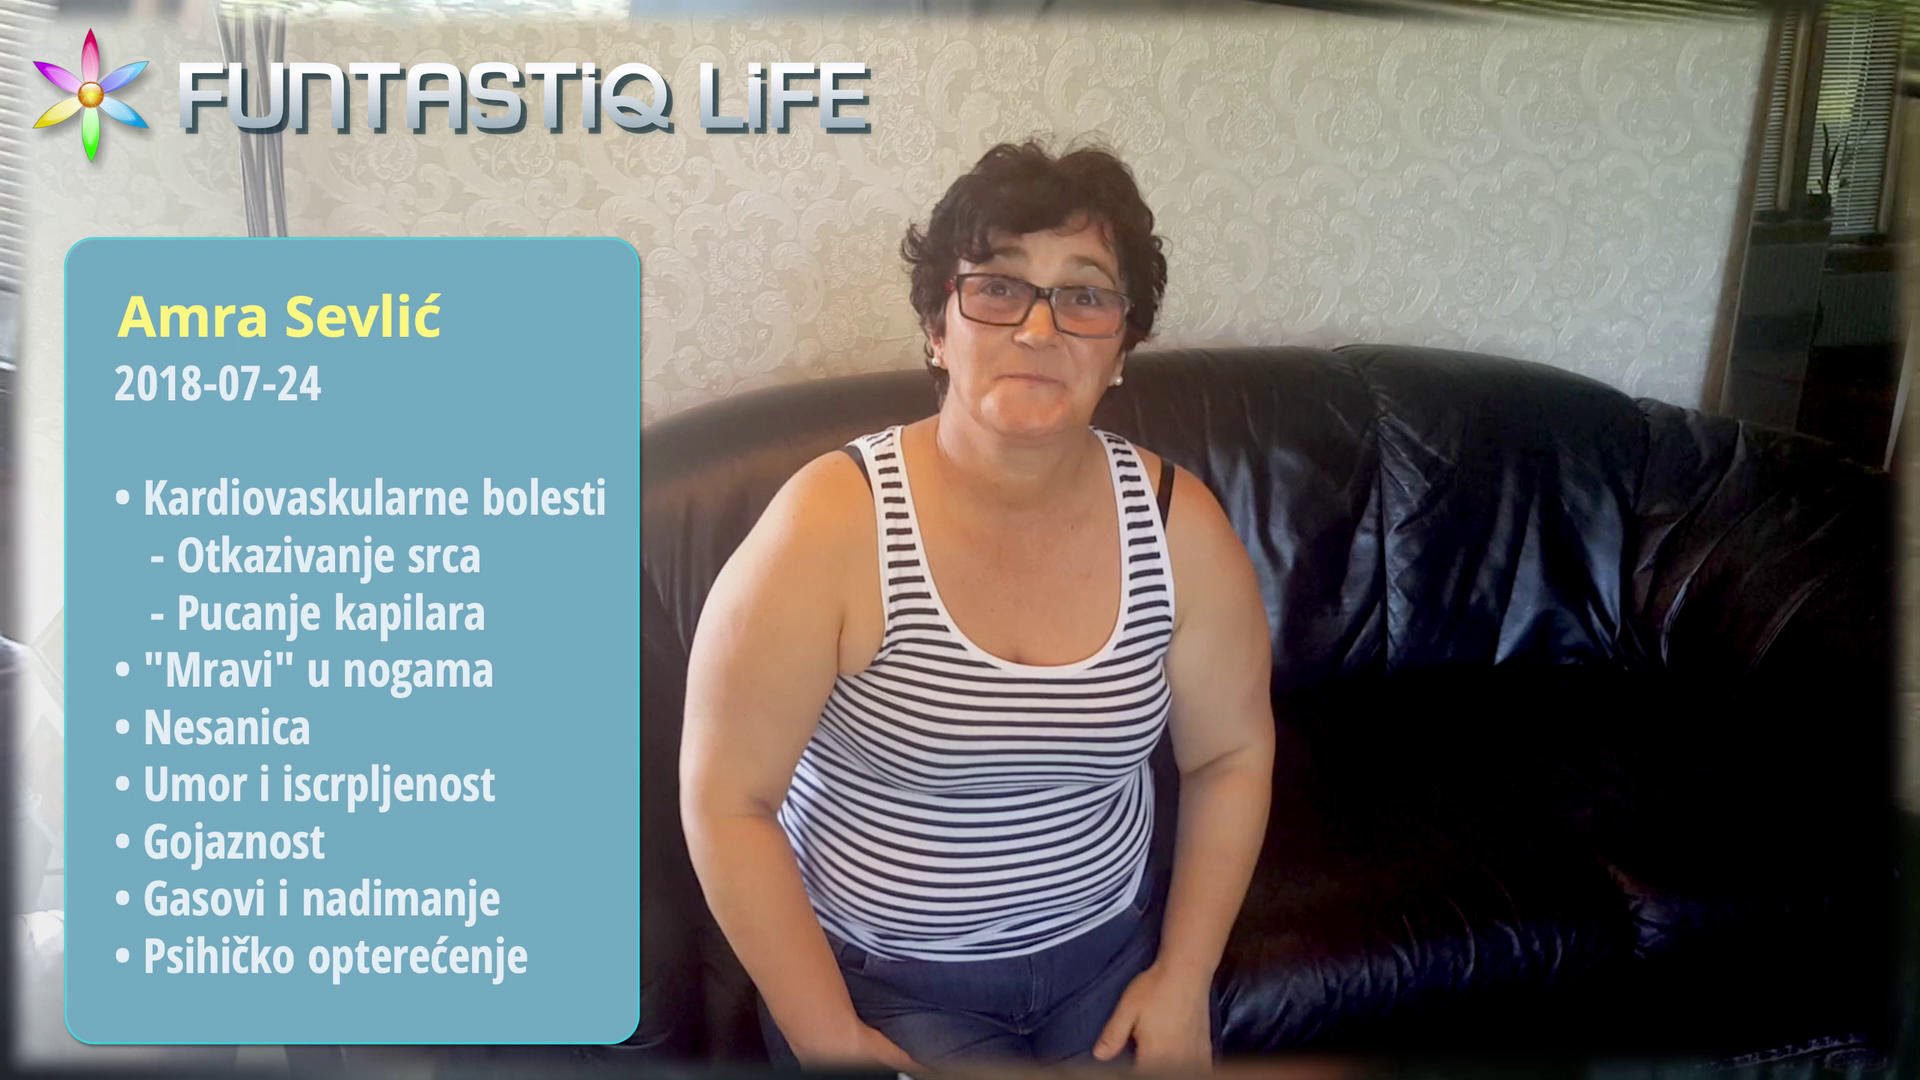 Amra Sevlić—Srce naputu da odkaže i bezbroj drugih simptoma—sve se poboljšalo za 14 dana